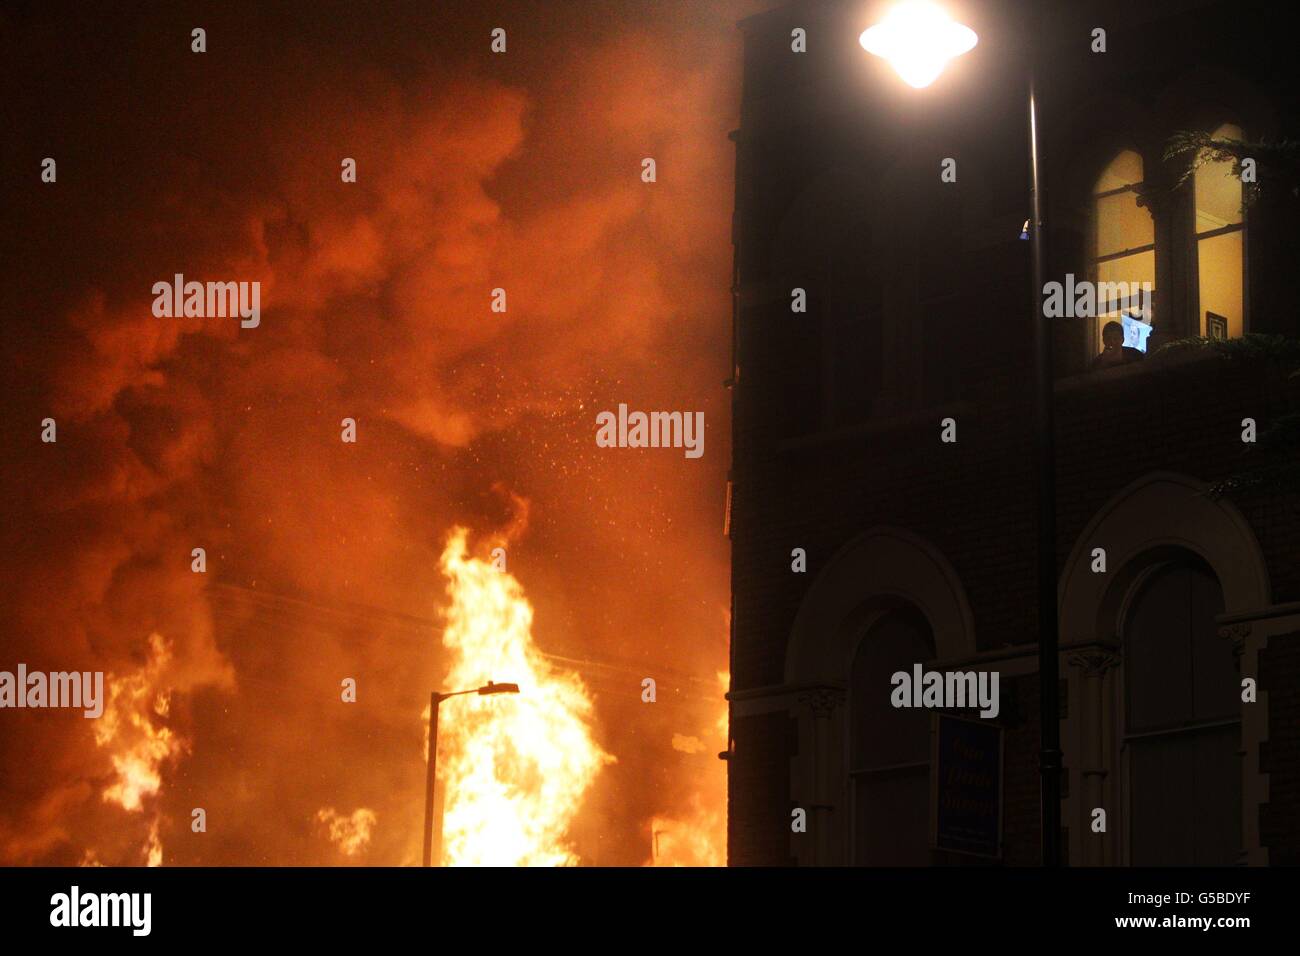 Foto inedita datata 07/08/11 dei tumulti estivi. Un uomo guarda fuori dalla sua finestra su Tottenham High Street come fiamme ingolfano l'edificio accanto, la sua televisione mostra una trasmissione della polizia circa la rivolta. Foto Stock